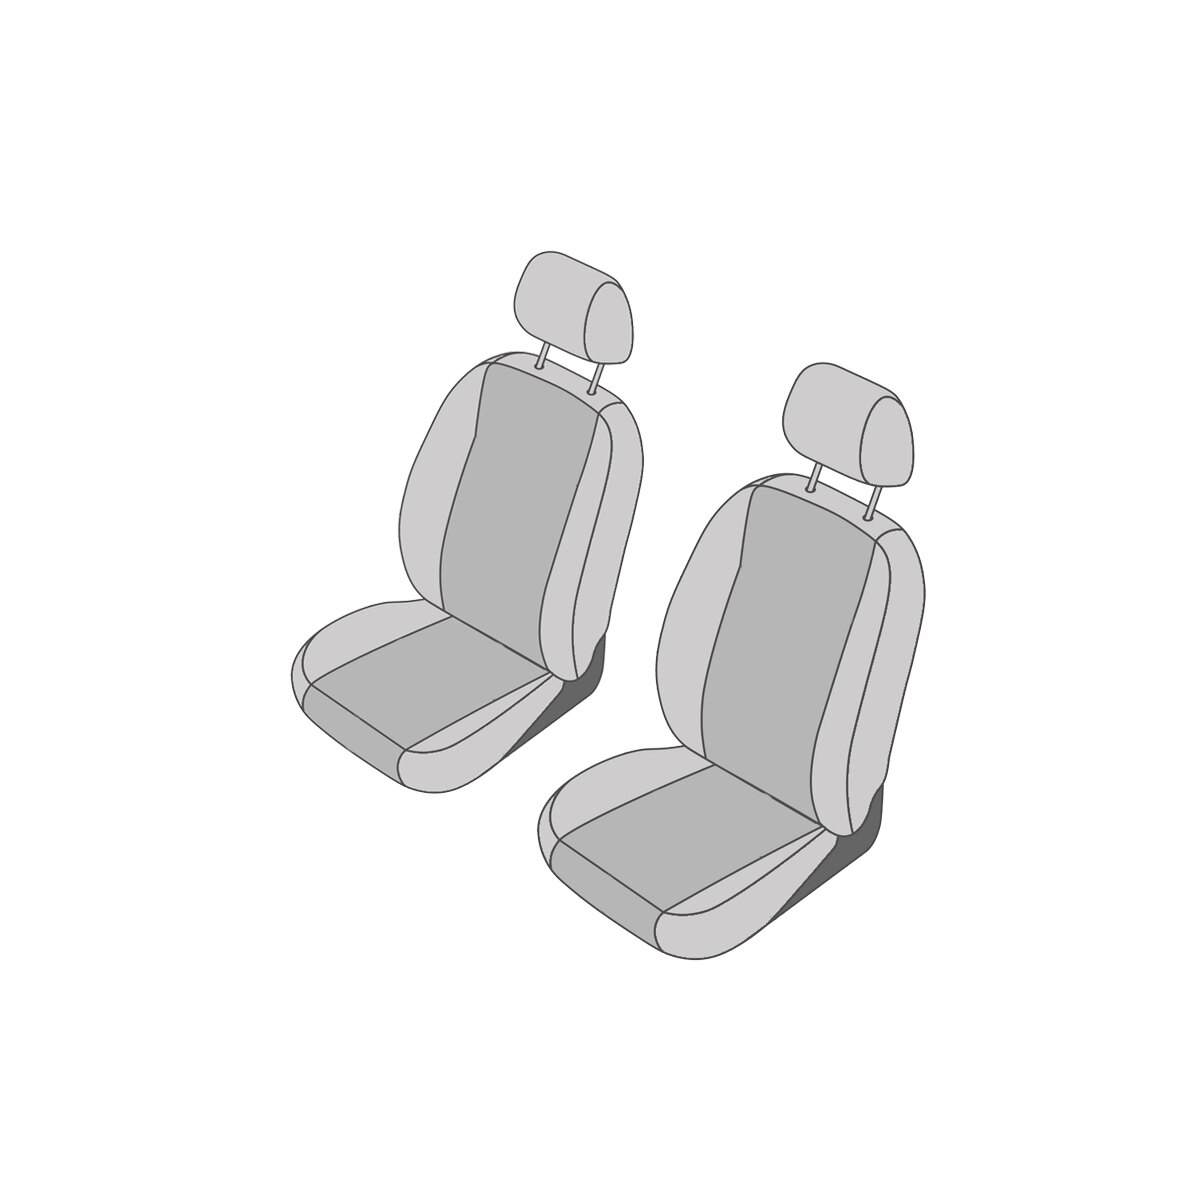 VW Polo (Typ 9N) Sitzbezüge für die Vordersitze (Normalsitze), 149,99 €